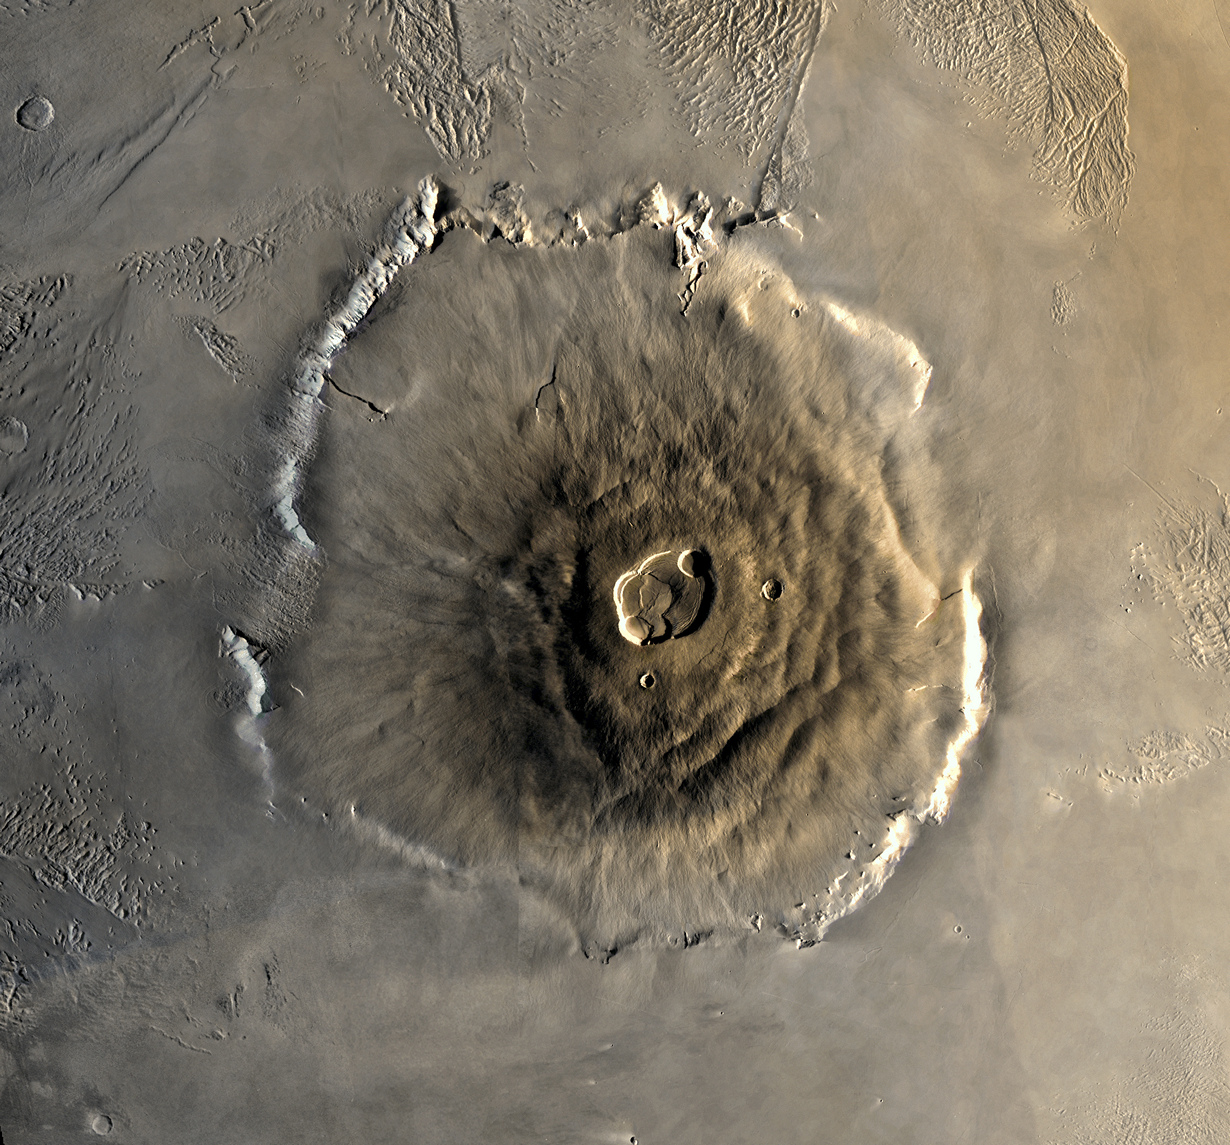 На Марсе находится самая высока гора из всех известных гор Солнечной системы. Её высота 22 км. (NASA)